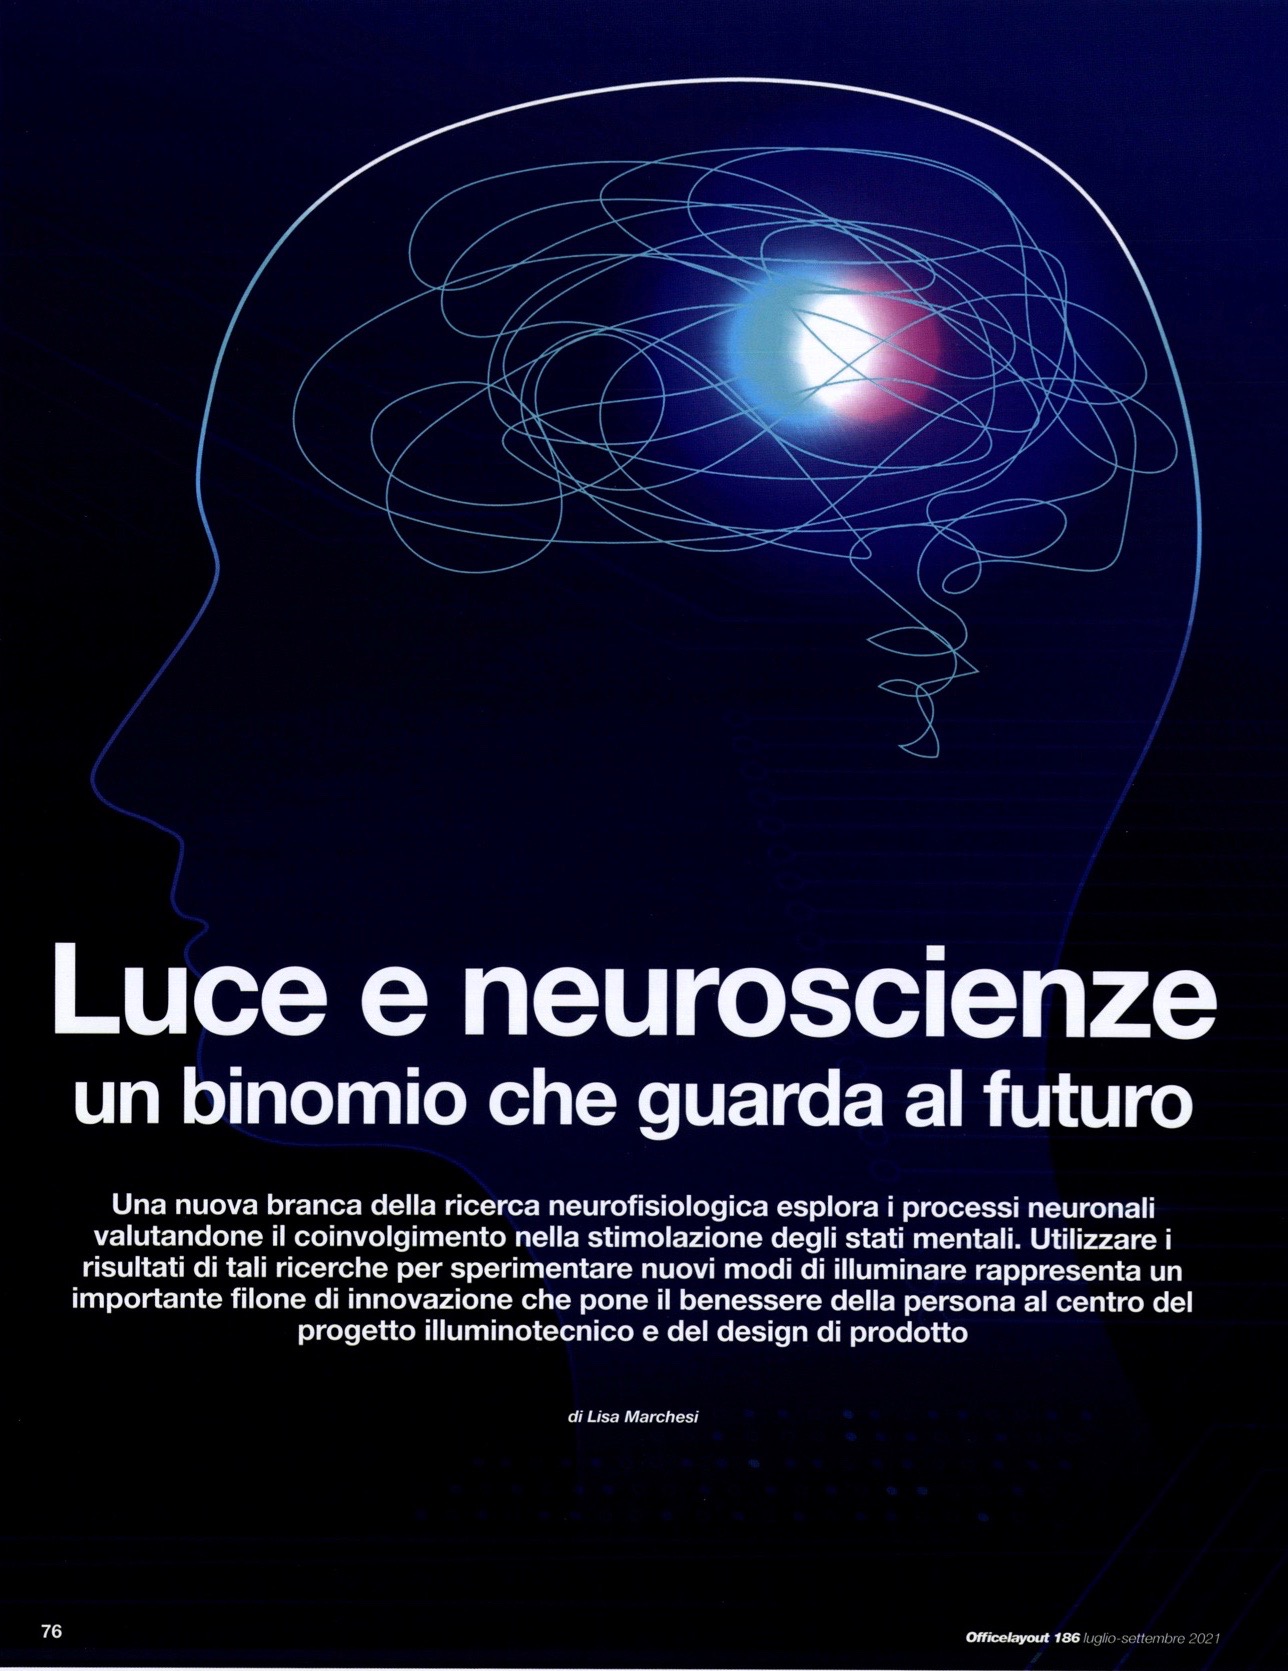 Luce e neuroscienze: un binomio che guarda al futuro